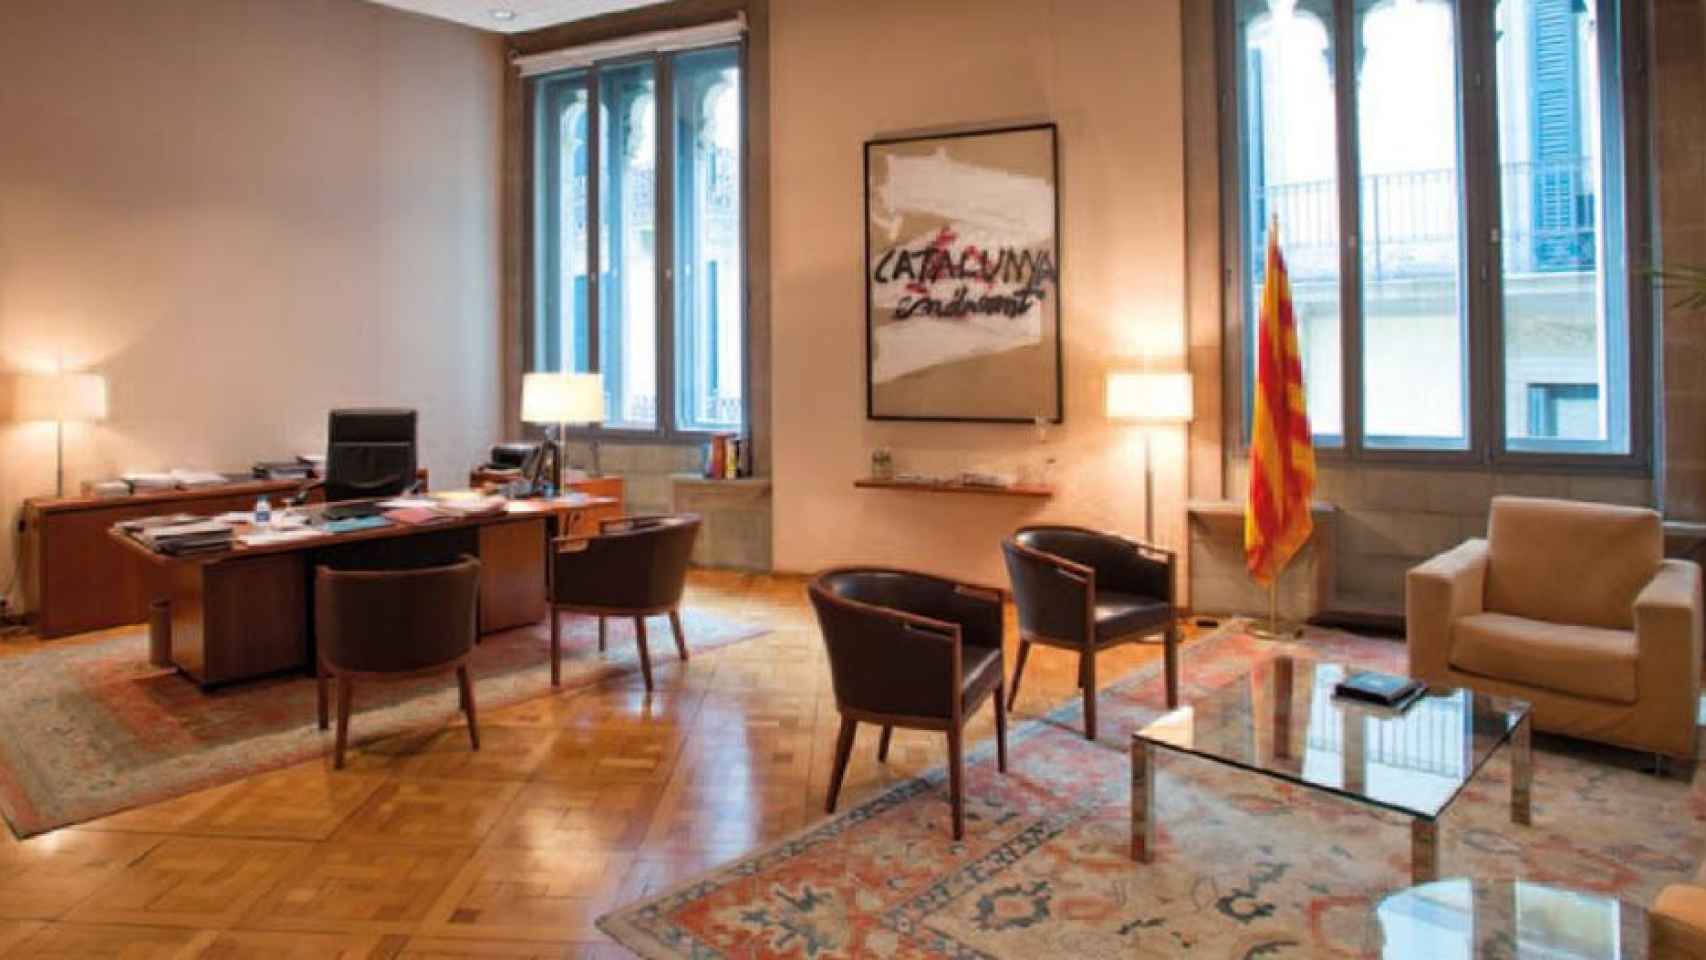 El despacho del presidente de la Generalitat / CG